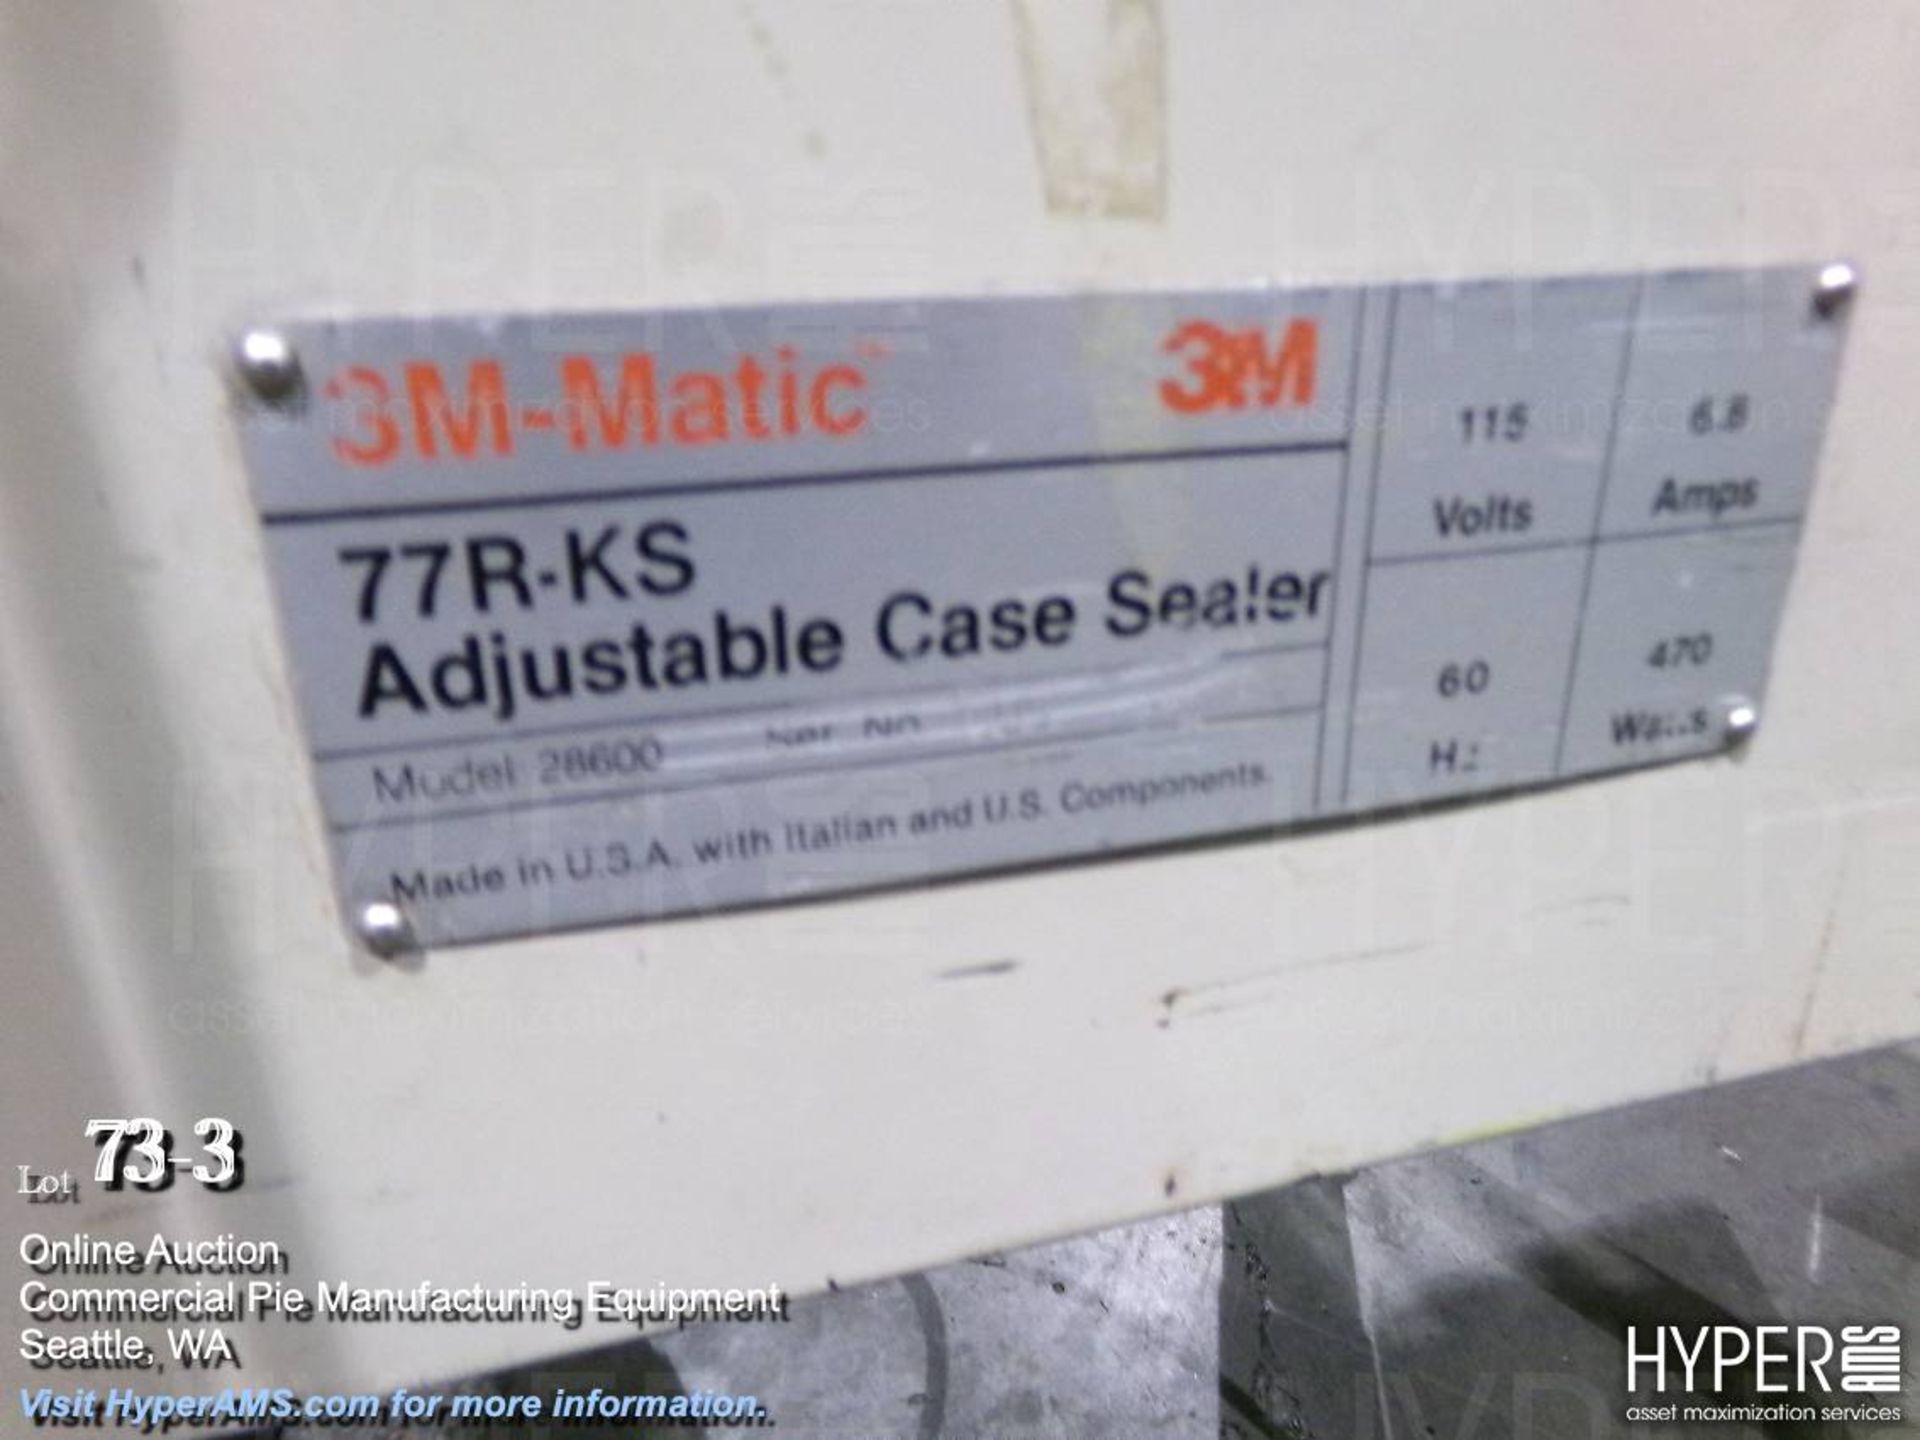 3M-Matic 77R-KS Adjustable Case Sealer Model 28600 S/N 5193 - Image 3 of 7